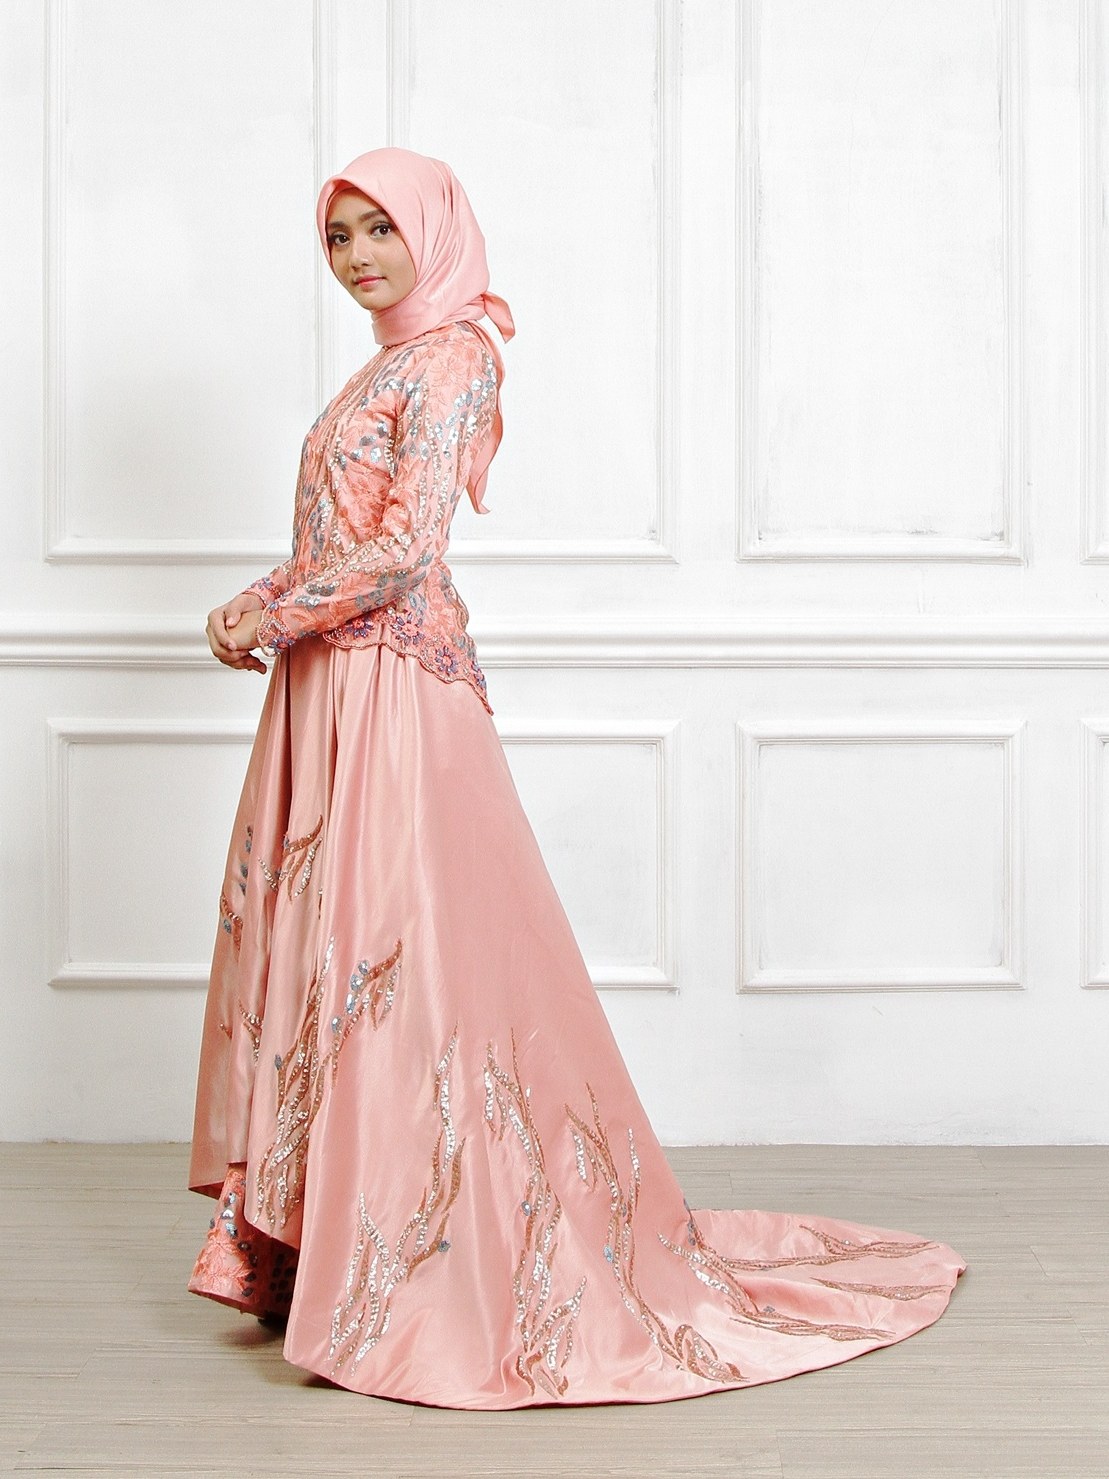 Model Sewa Gaun Pengantin Muslimah Yogyakarta Q0d4 Sewa Perdana Baju Pengantin Muslimah Jogja Gaun Pengantin